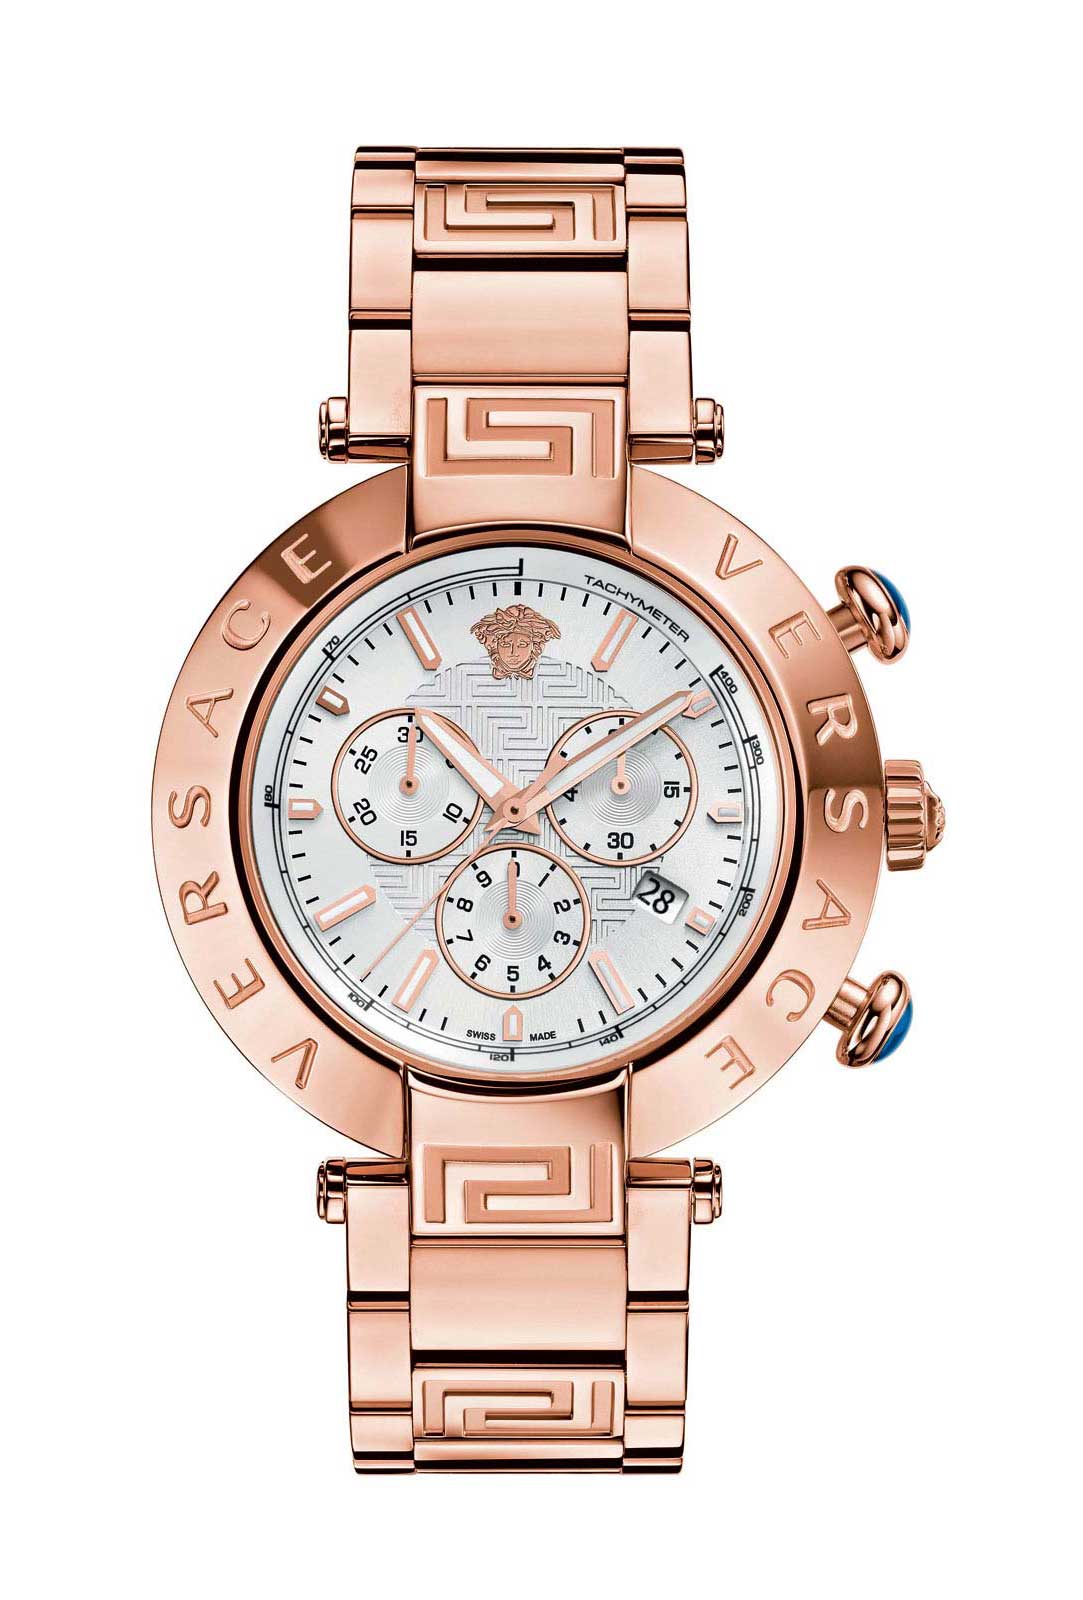 Versace QUARTZ CHRONO watch 5040D ROSE GOLD - Click Image to Close